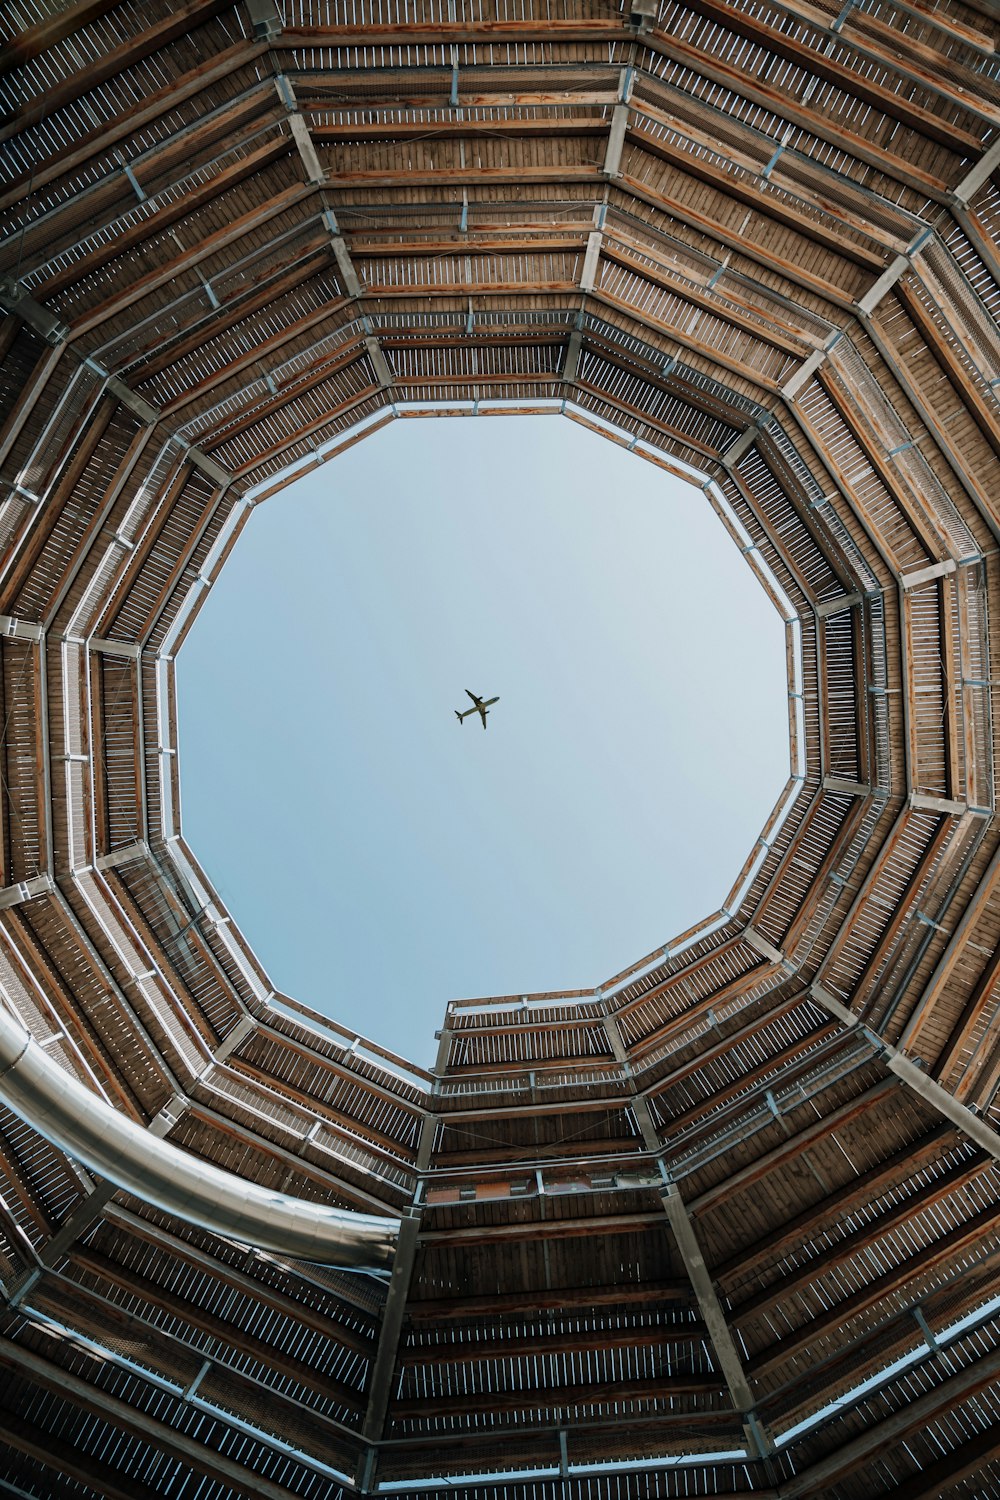 Un aeroplano che vola nel cielo attraverso una struttura di legno